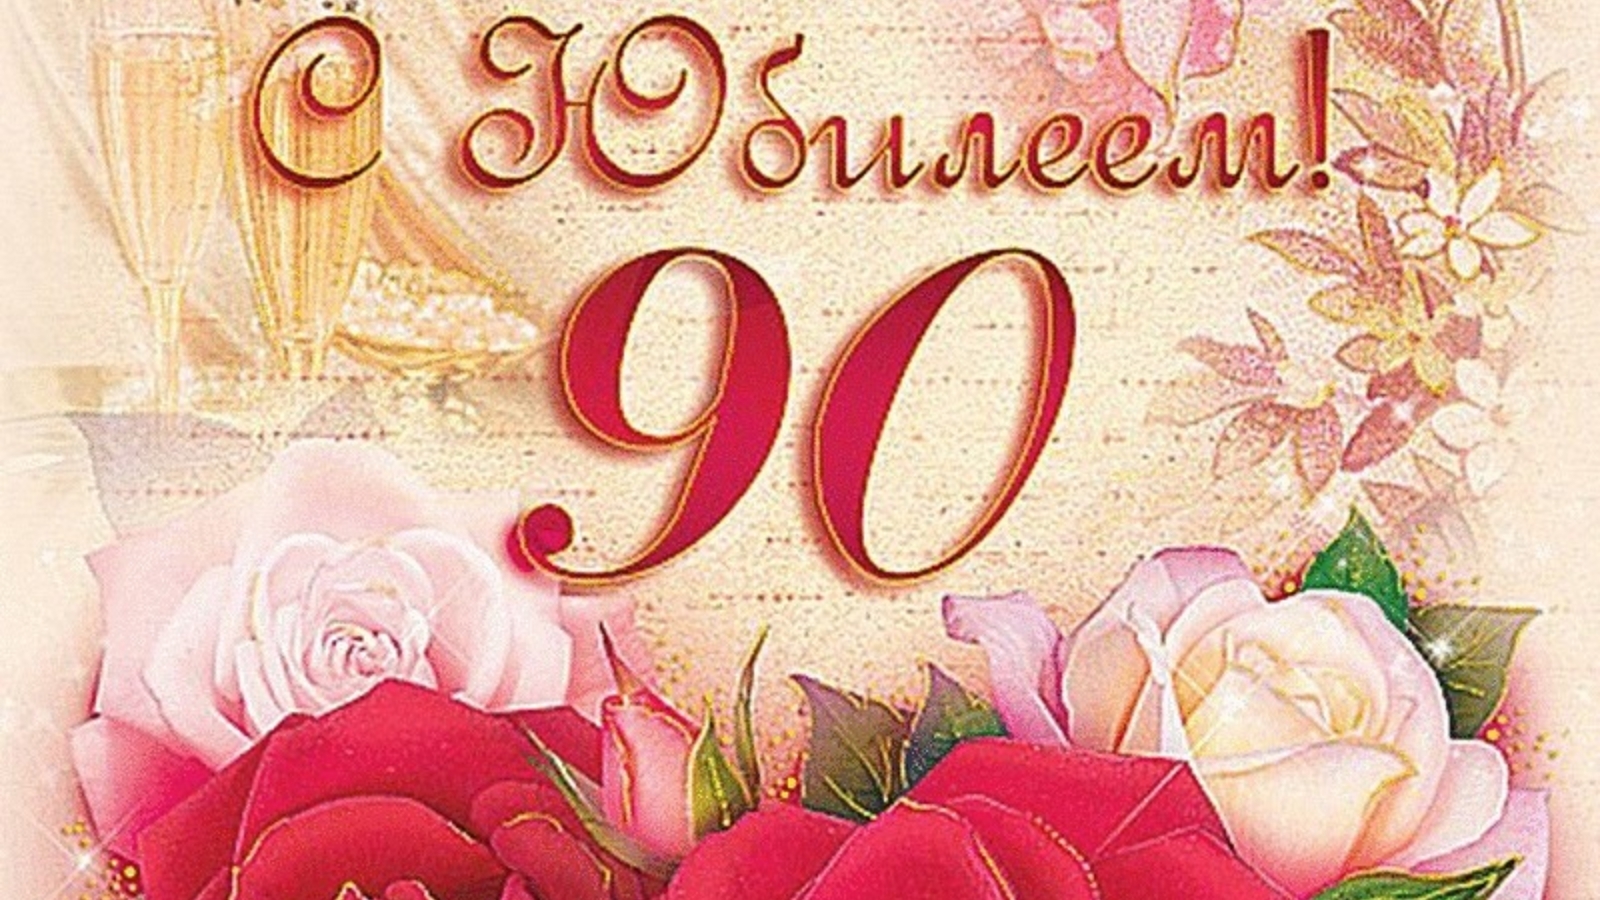 день рождения 90 лет